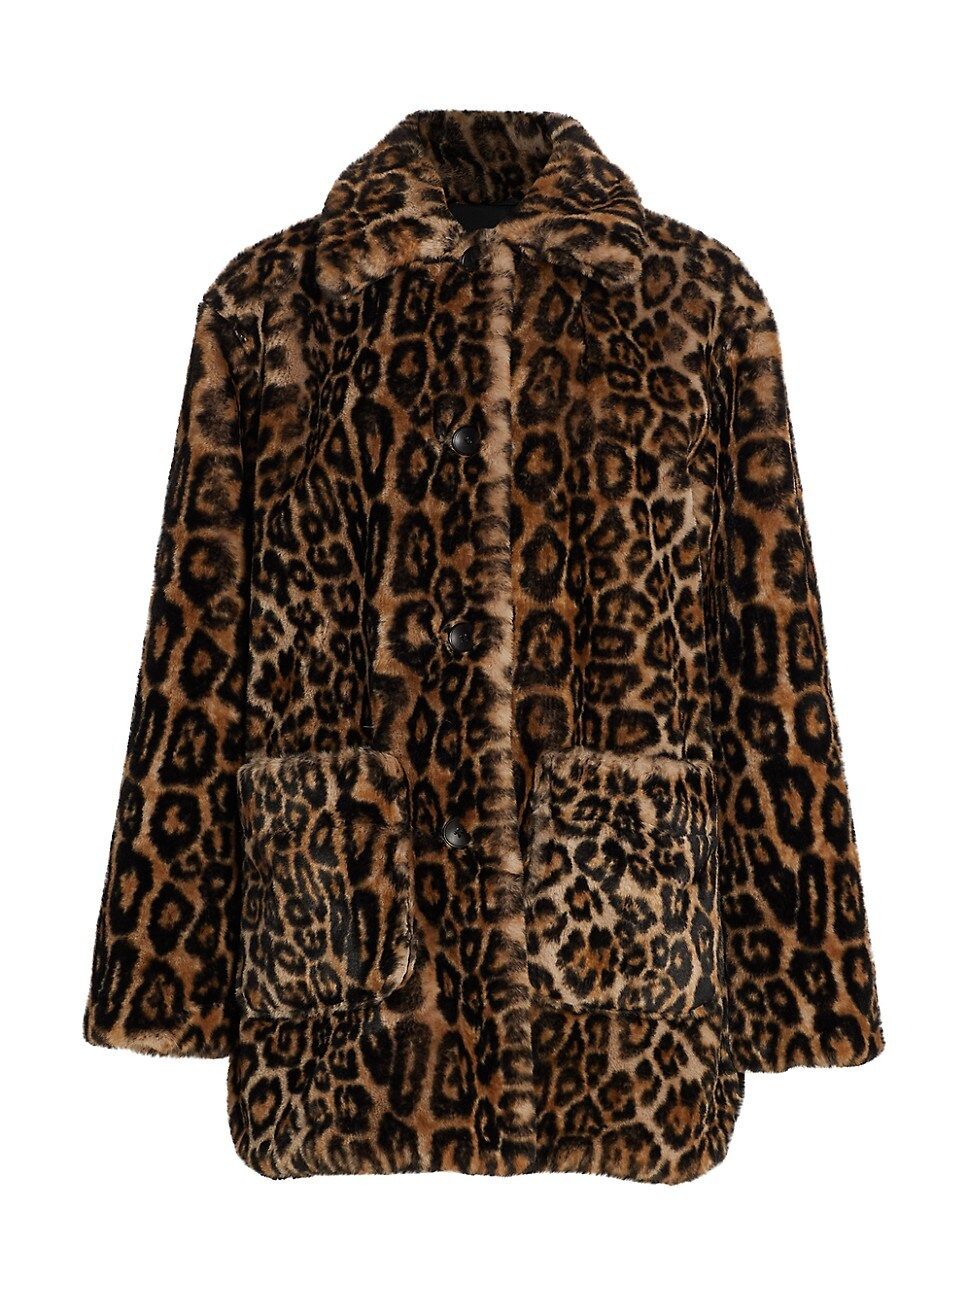 A.L.C. Women's Bolton Leopard Print Faux Fur Coat - Leopard - Size XS | Saks Fifth Avenue